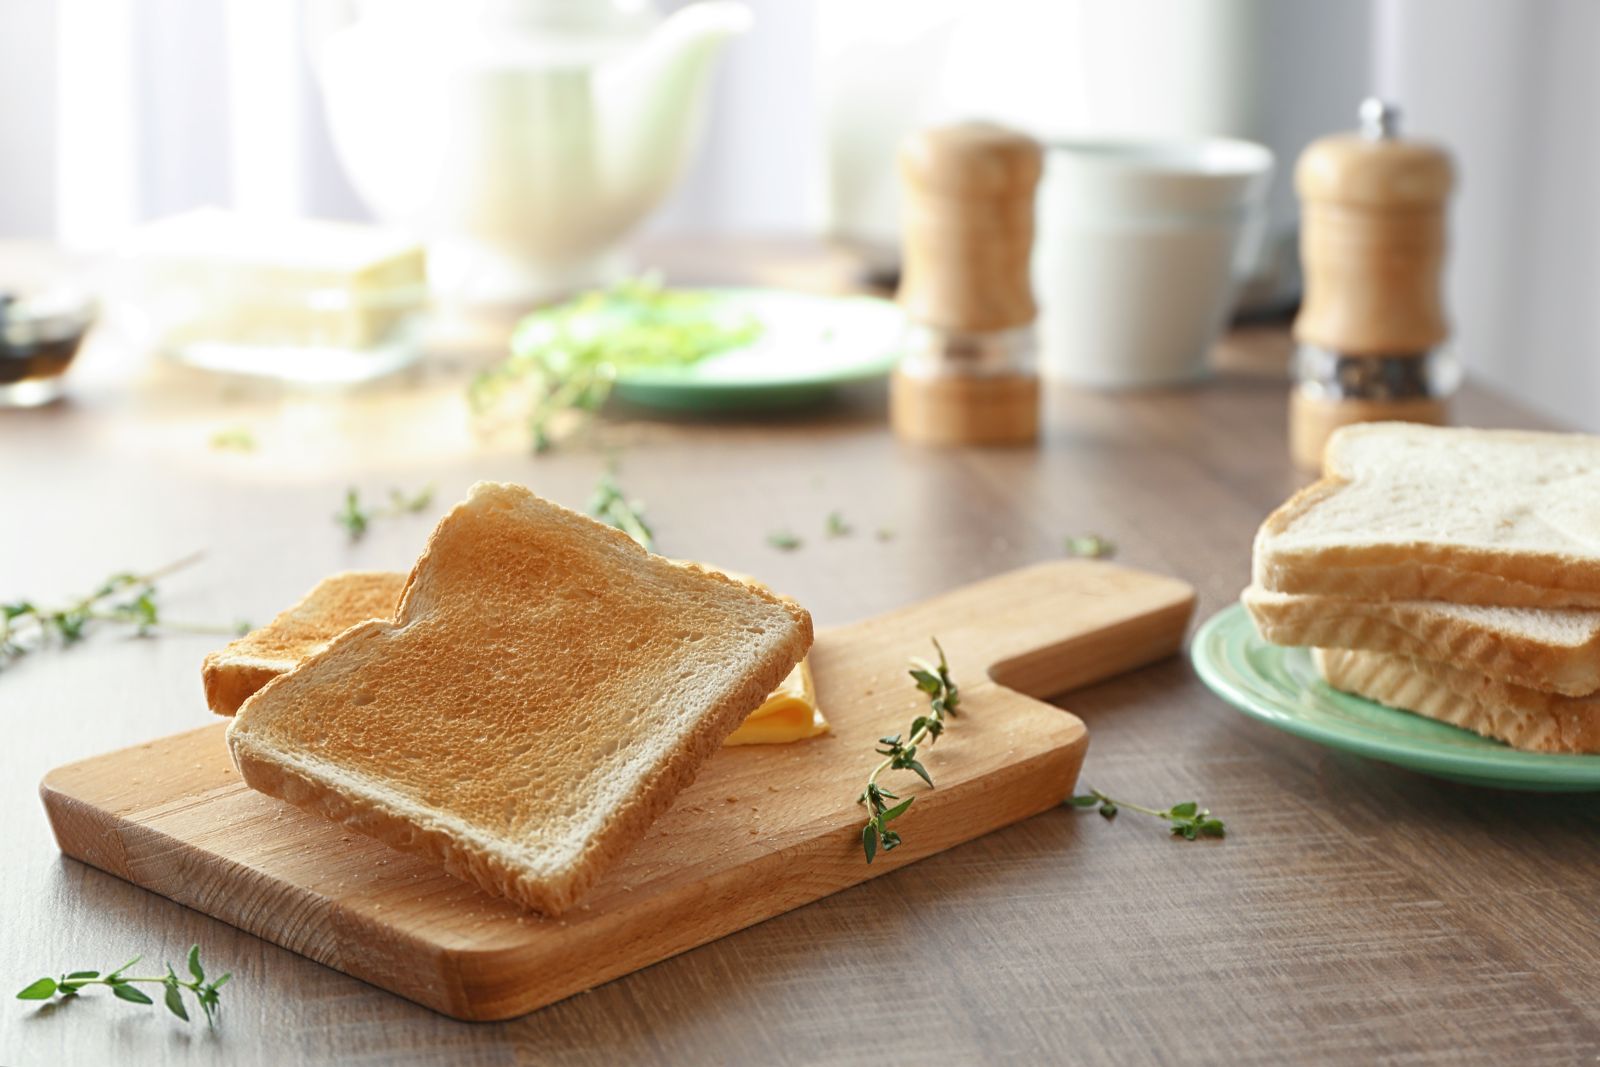 Theo chuyên gia dinh dưỡng, 1 lát bánh mì sandwich có lượng calo khoảng 67 kcal